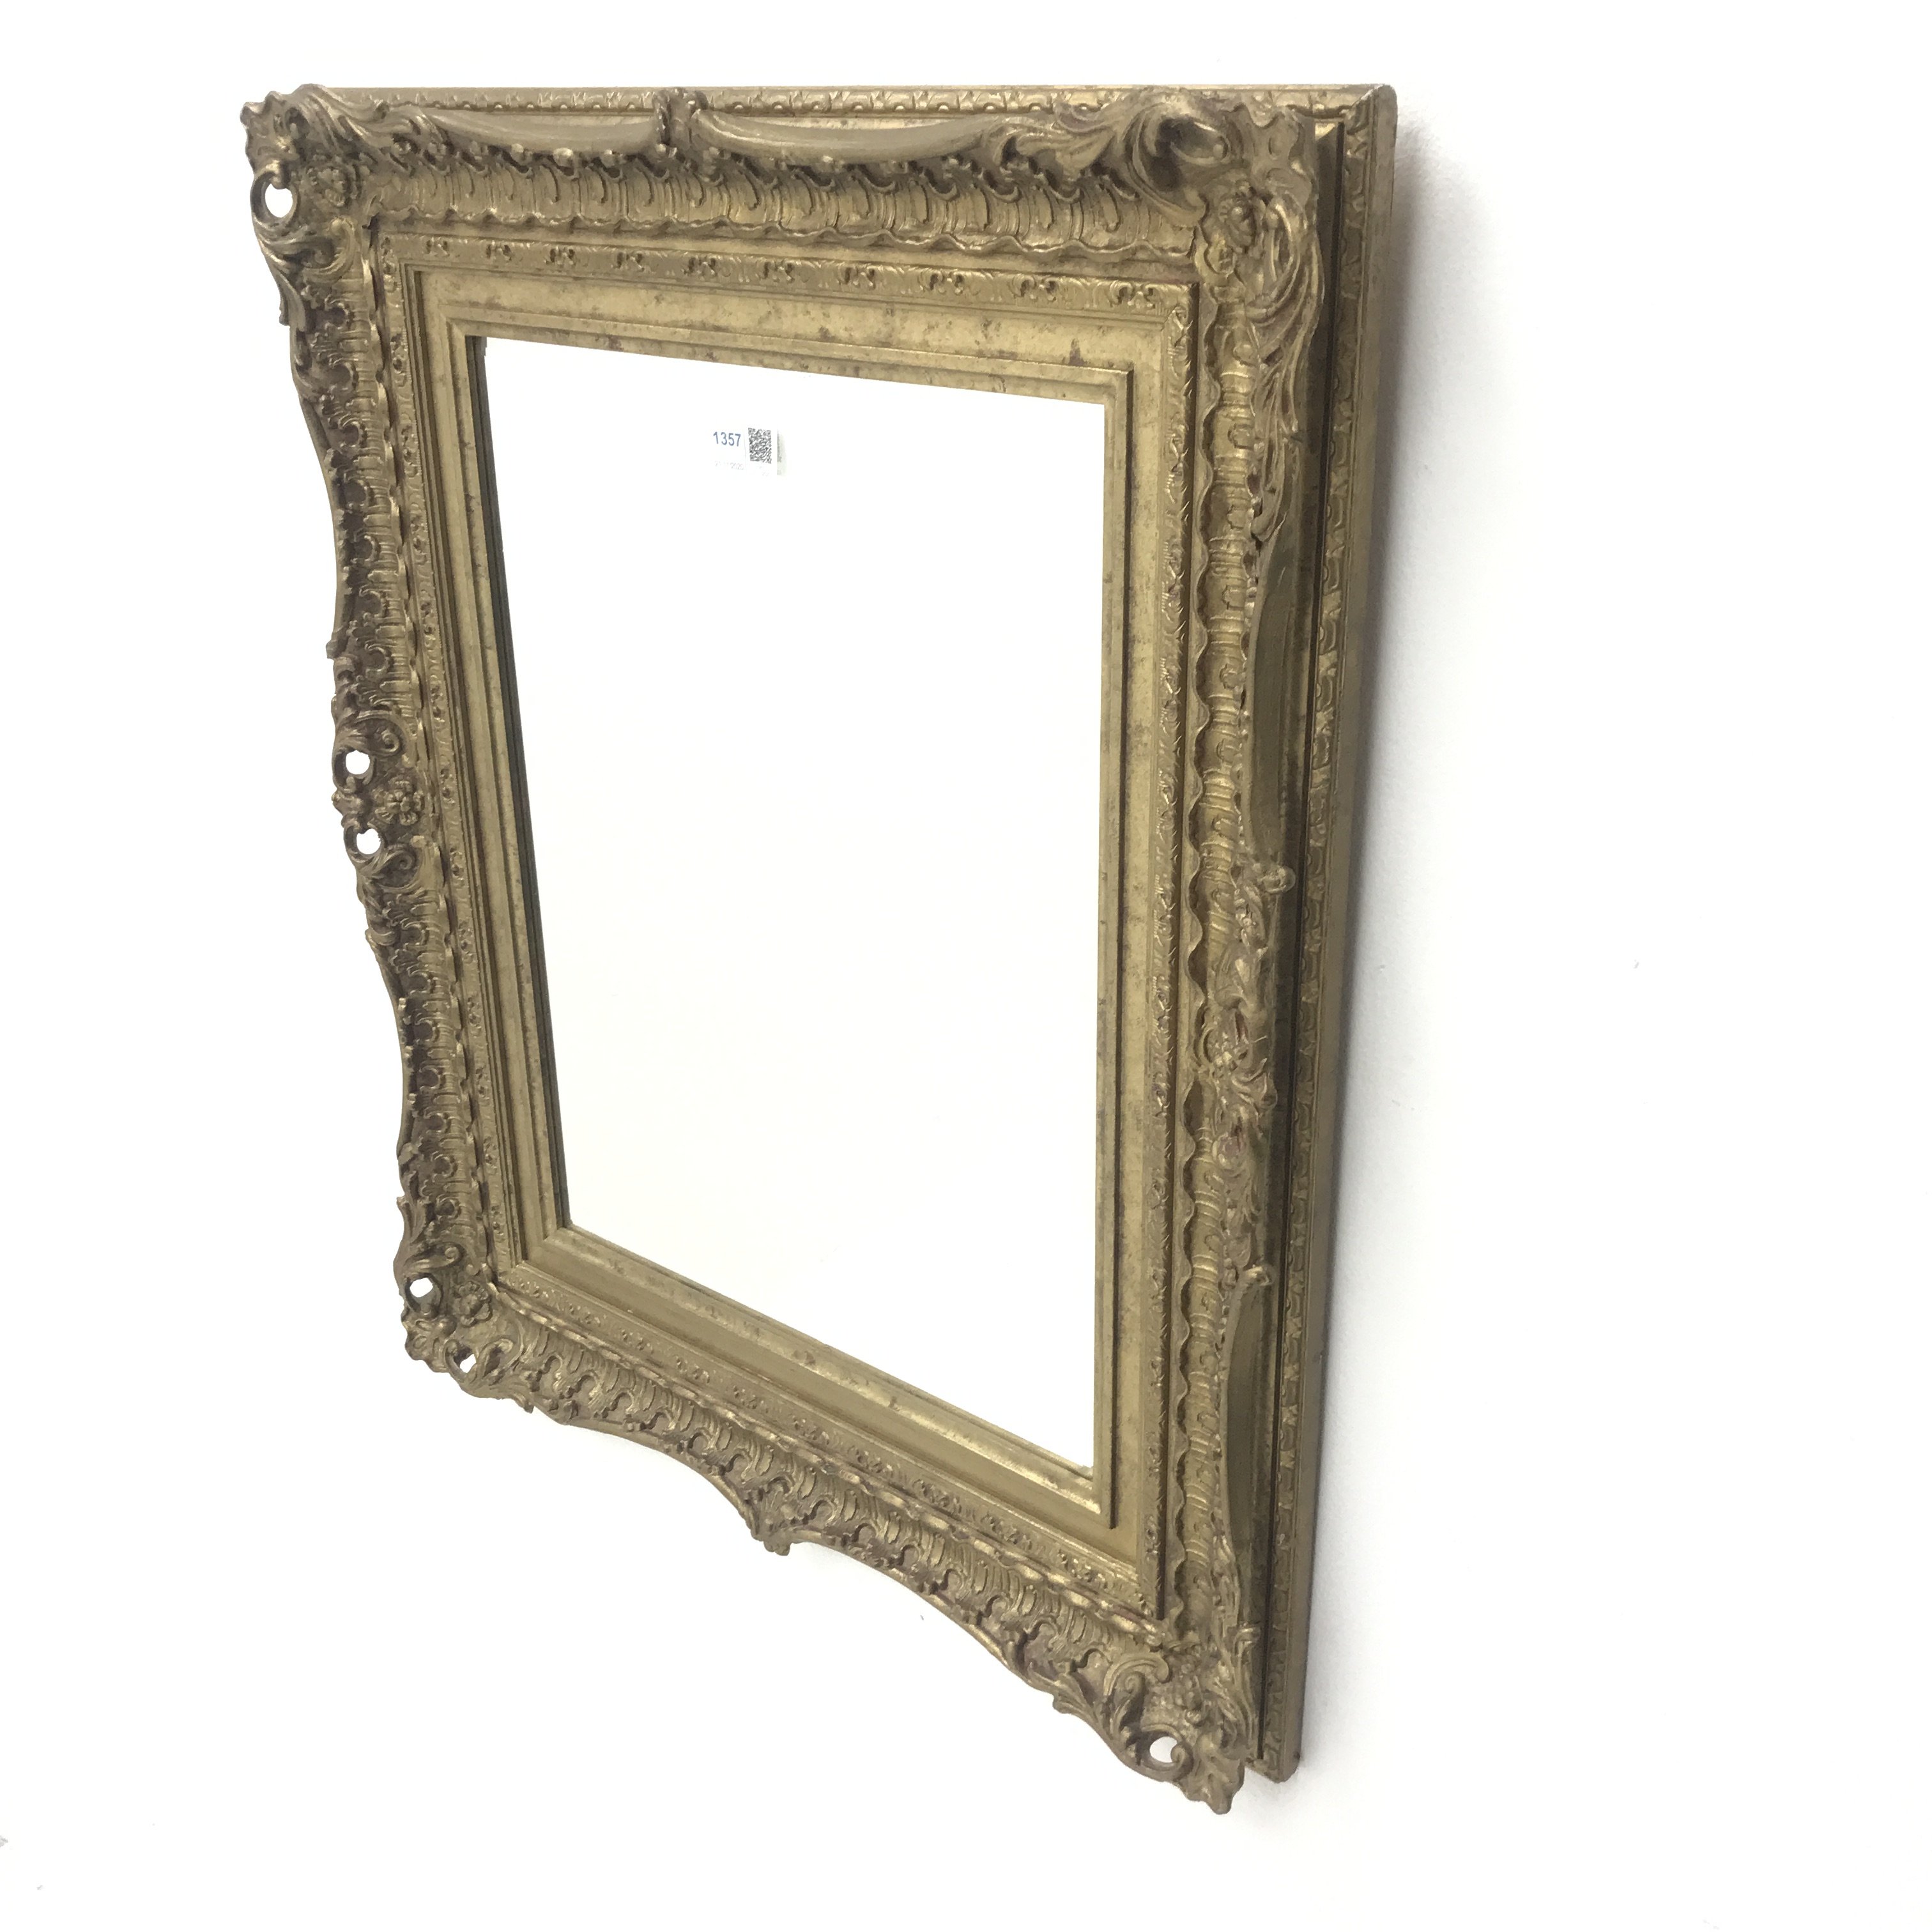 Swept gilt framed bevel edge mirror, W54cm, H65cm - Image 5 of 6